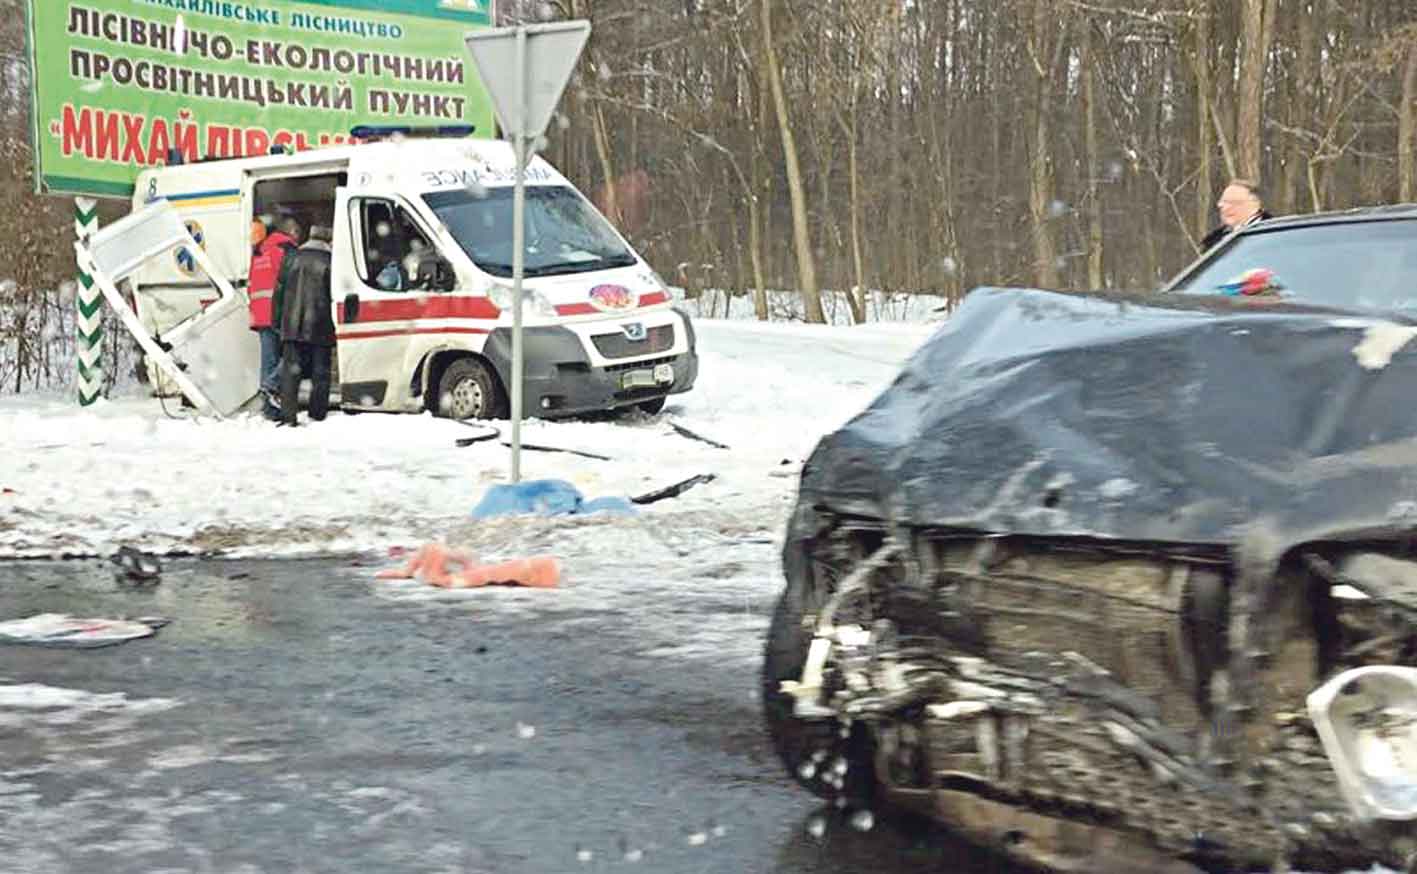 Масштабна аварія під Вінницею – 10 постраждалих. Серед учасників – син екс-голови райради